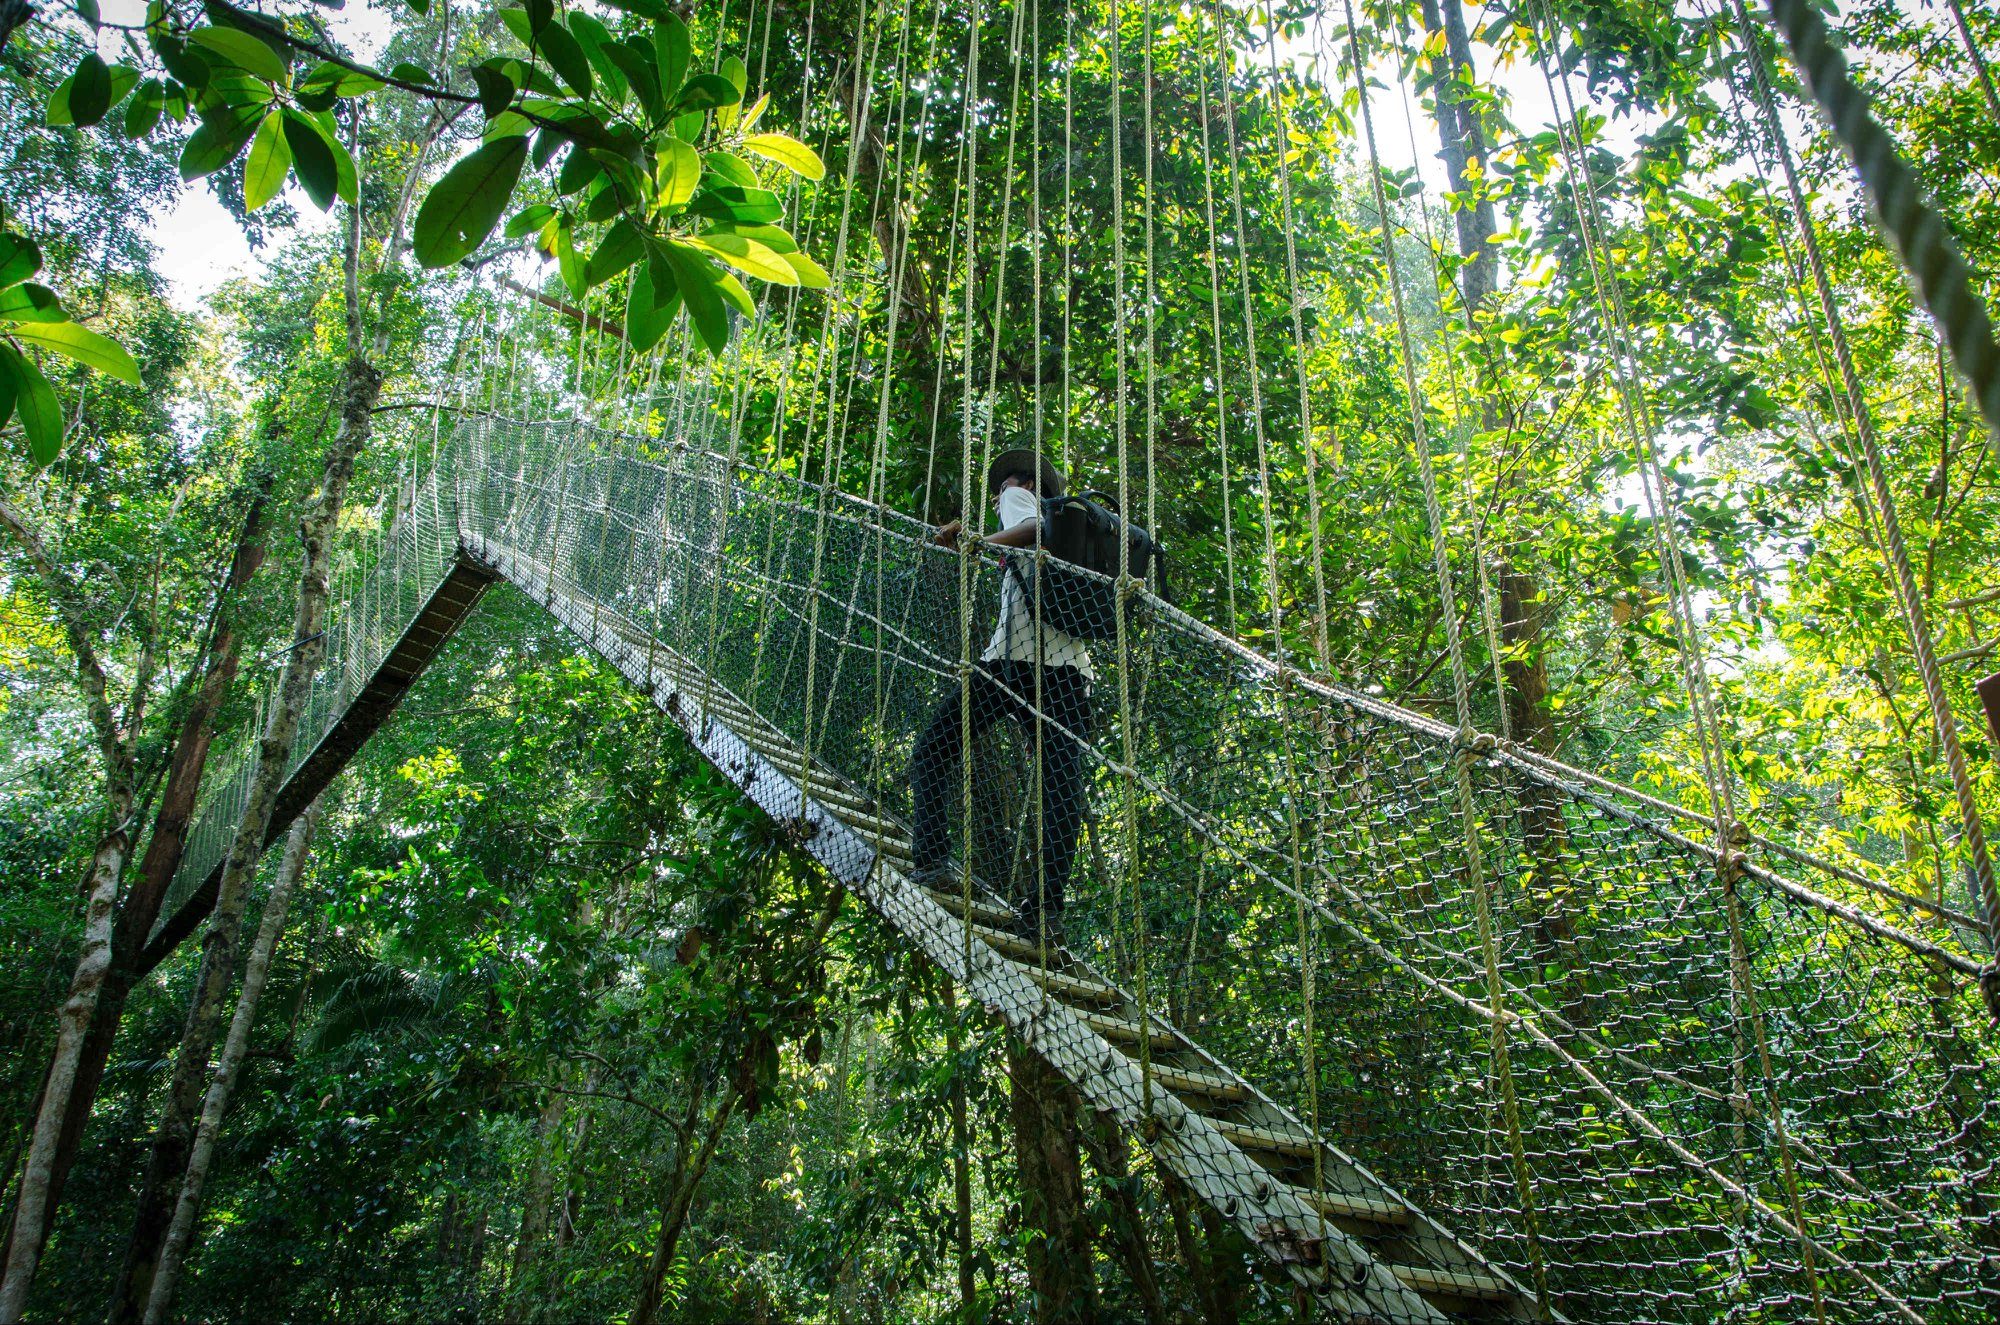 सौराहाको बाघमारा सामुदायिक वनमा यस्तै खालको क्यानोपी वाक ब्रिज बनाउन लागिएको हो। फाइल तस्बिर।